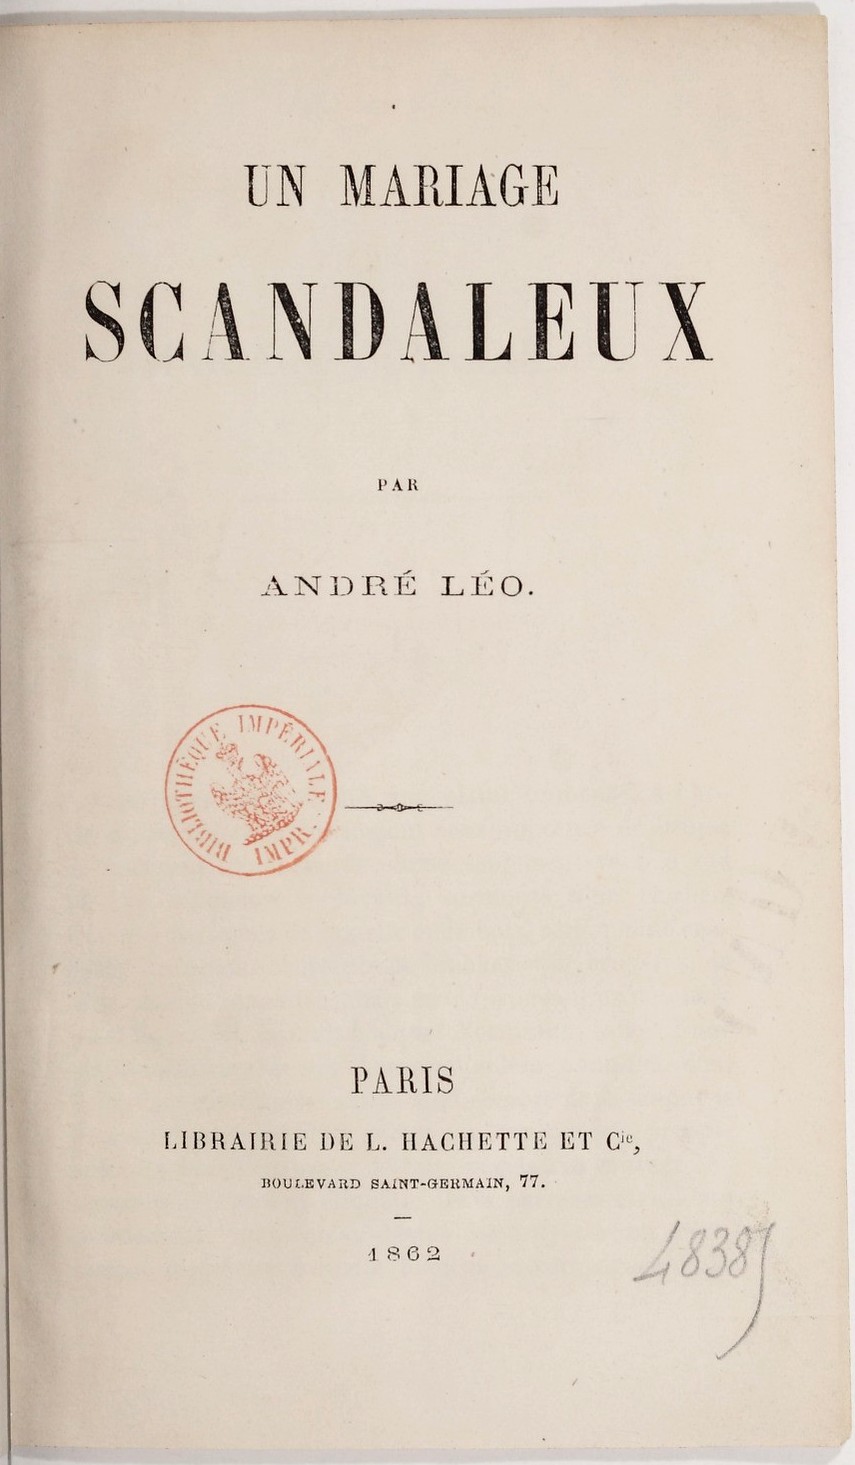 Un mariage scandaleux par André Léo, Paris, librairie de L. Hachette et Cie, boulevard Saint-Germain, 77. 1862. (source Gallica – BNF)